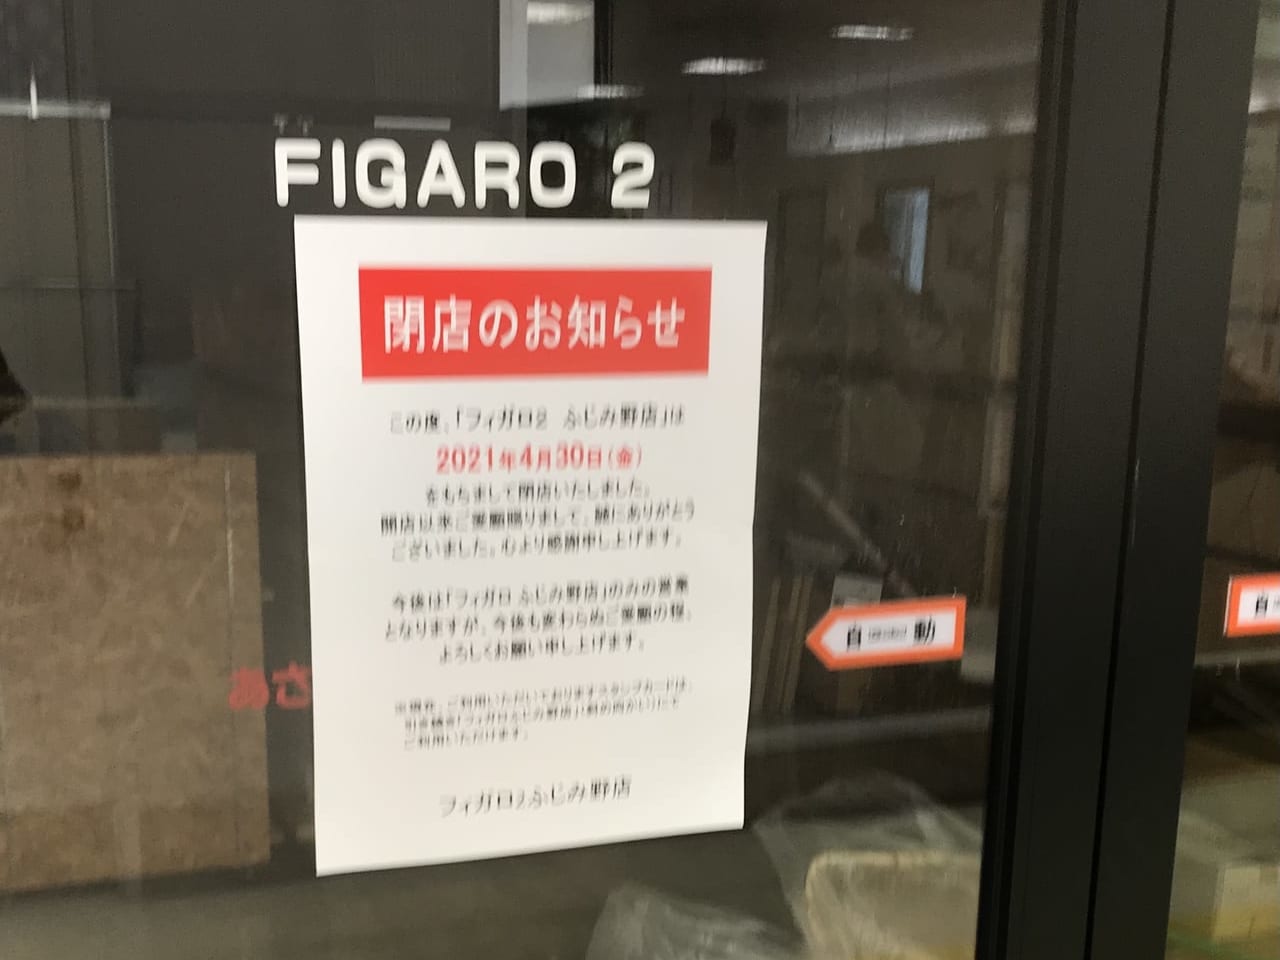 ふじみ野駅構内の駅ビルにあった「フィガロ2 ふじみ野店」が閉店